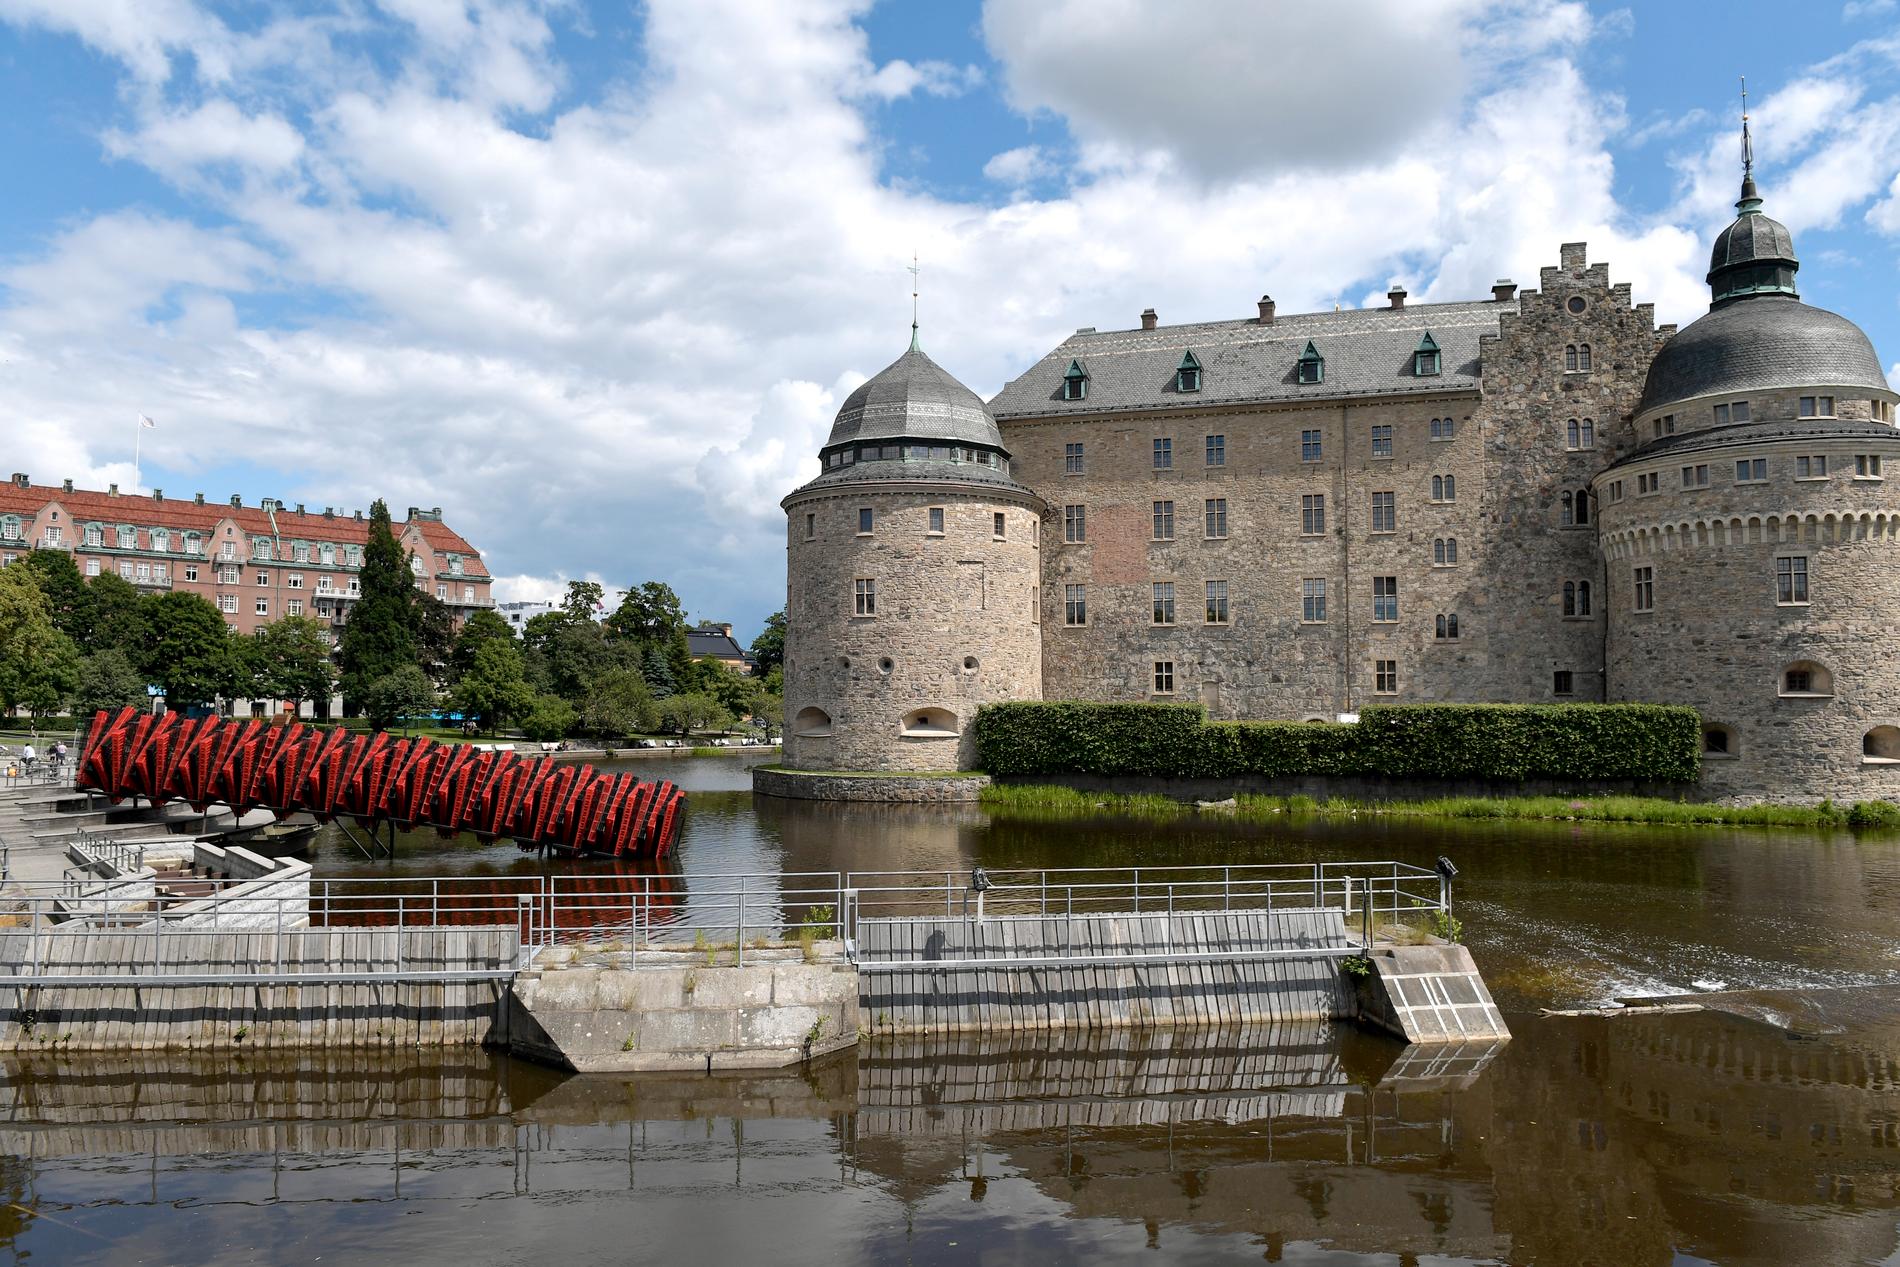 Ljusshowen skulle sättas upp på Örebro slott. Arkivbild.